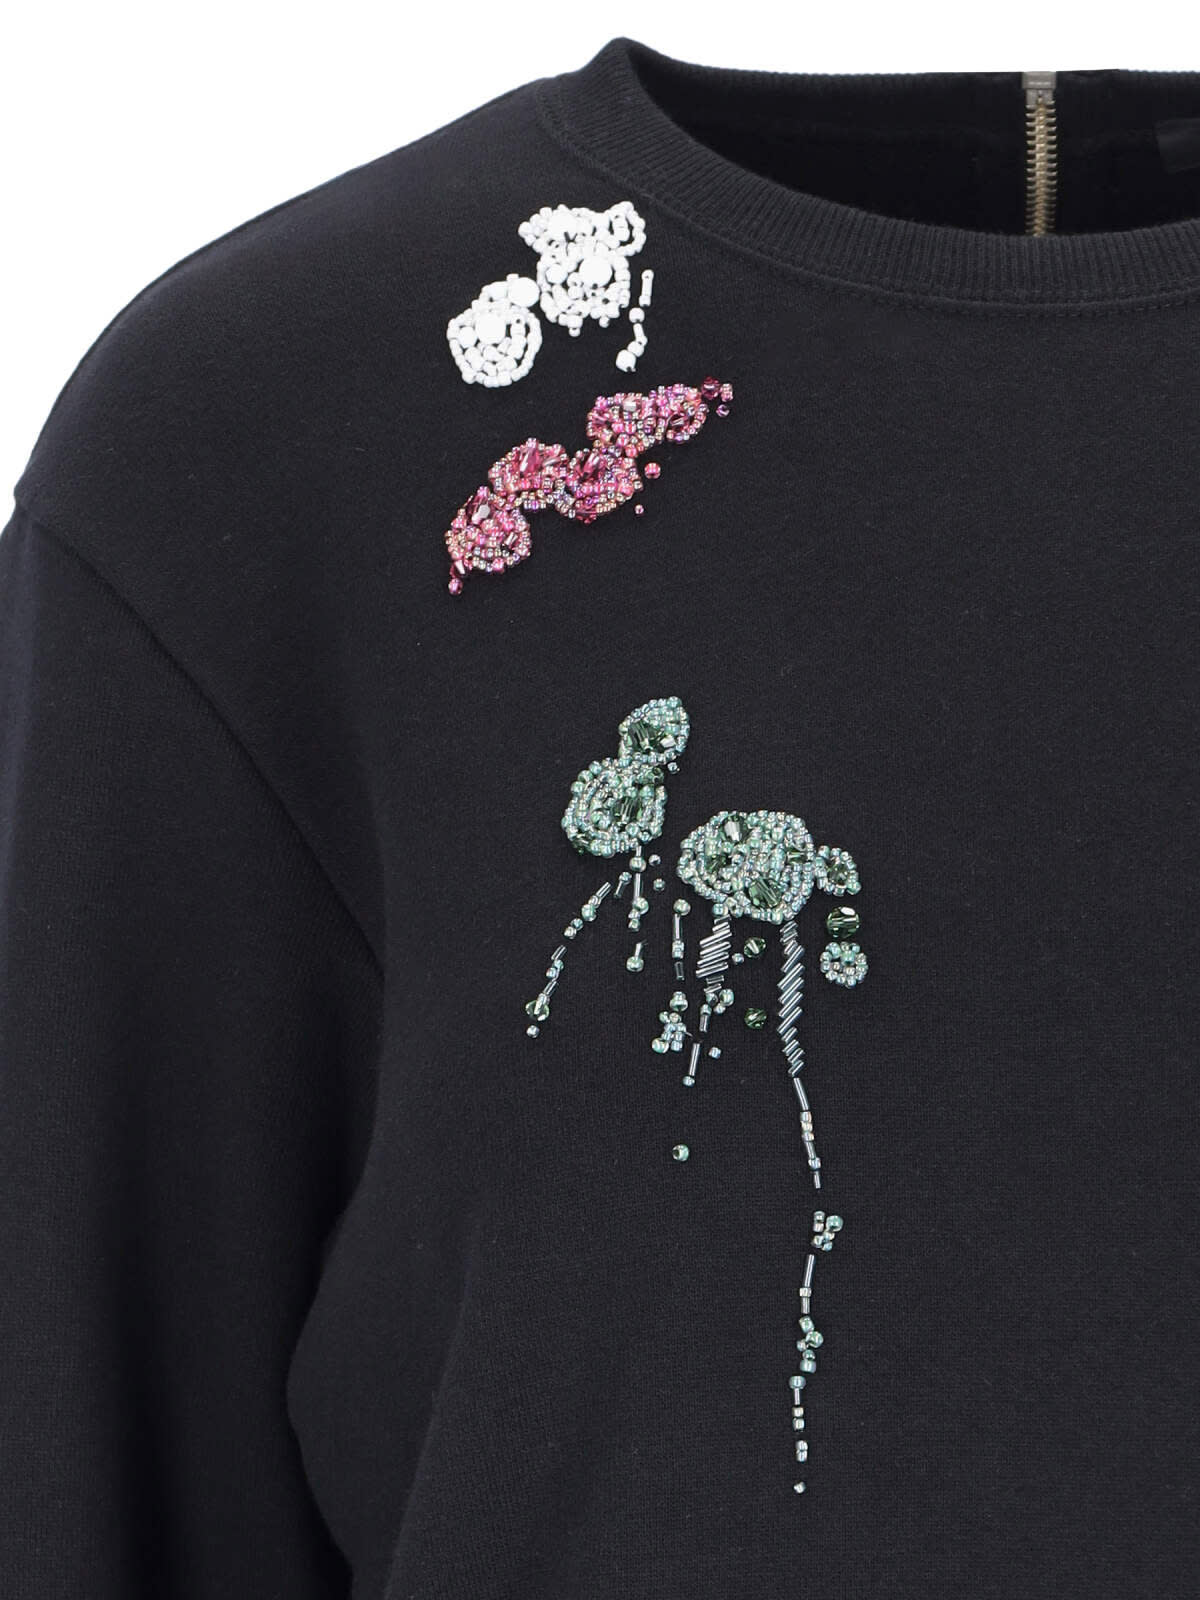 Shop Undercover Embroidery Crewneck Sweatshirt In Black